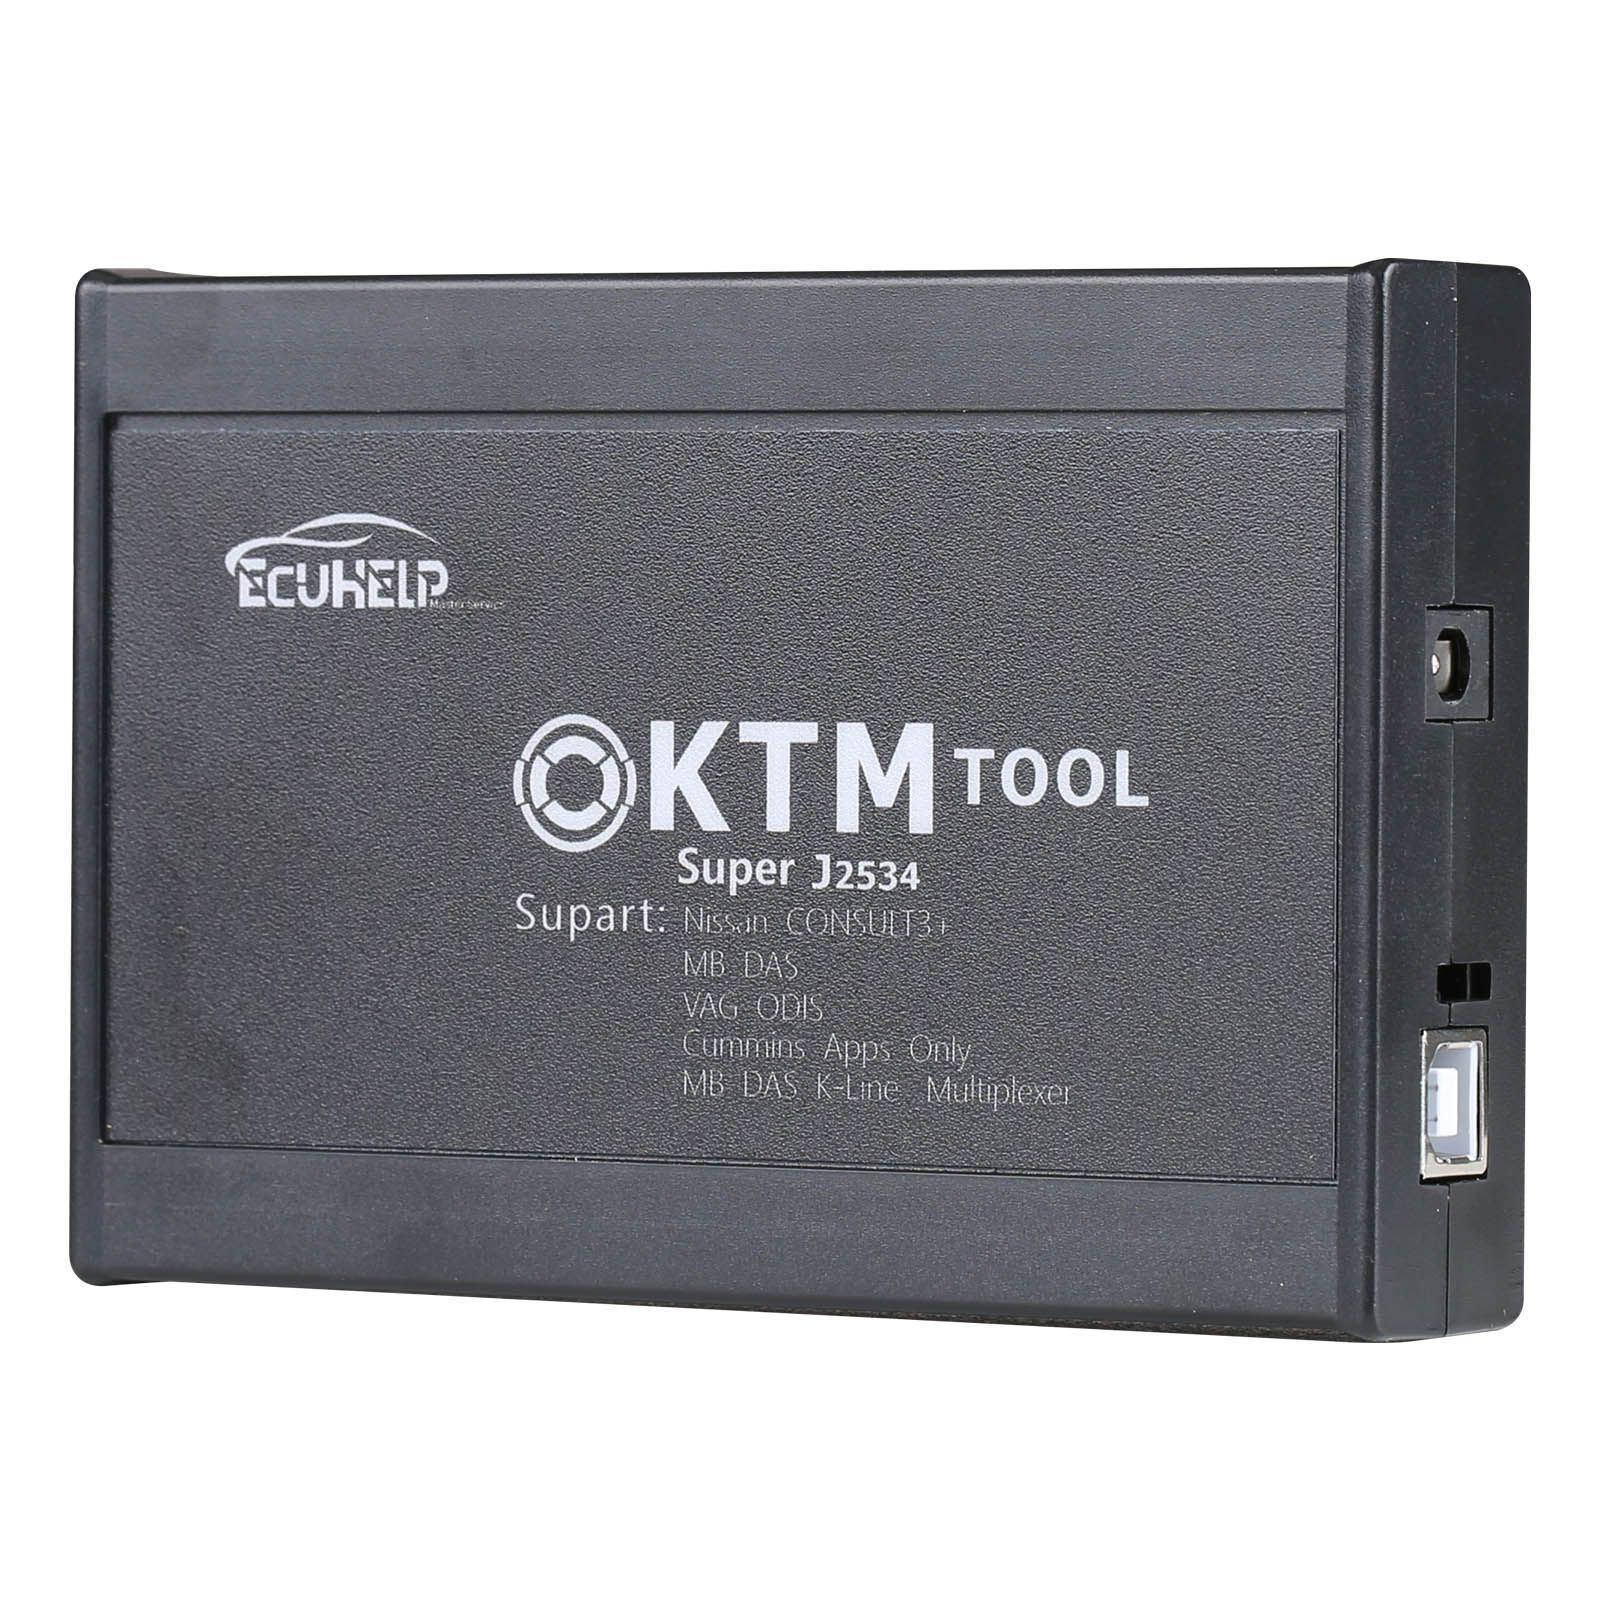 KTM200 67 in 1 KTMTool 1.20 Steuergeräte Programmierer Update Version von KTM100 Ktag Renolink OBD2 fügt 200 Steuergeräte inkl. PCR2 hinzu.1 PSA SID208